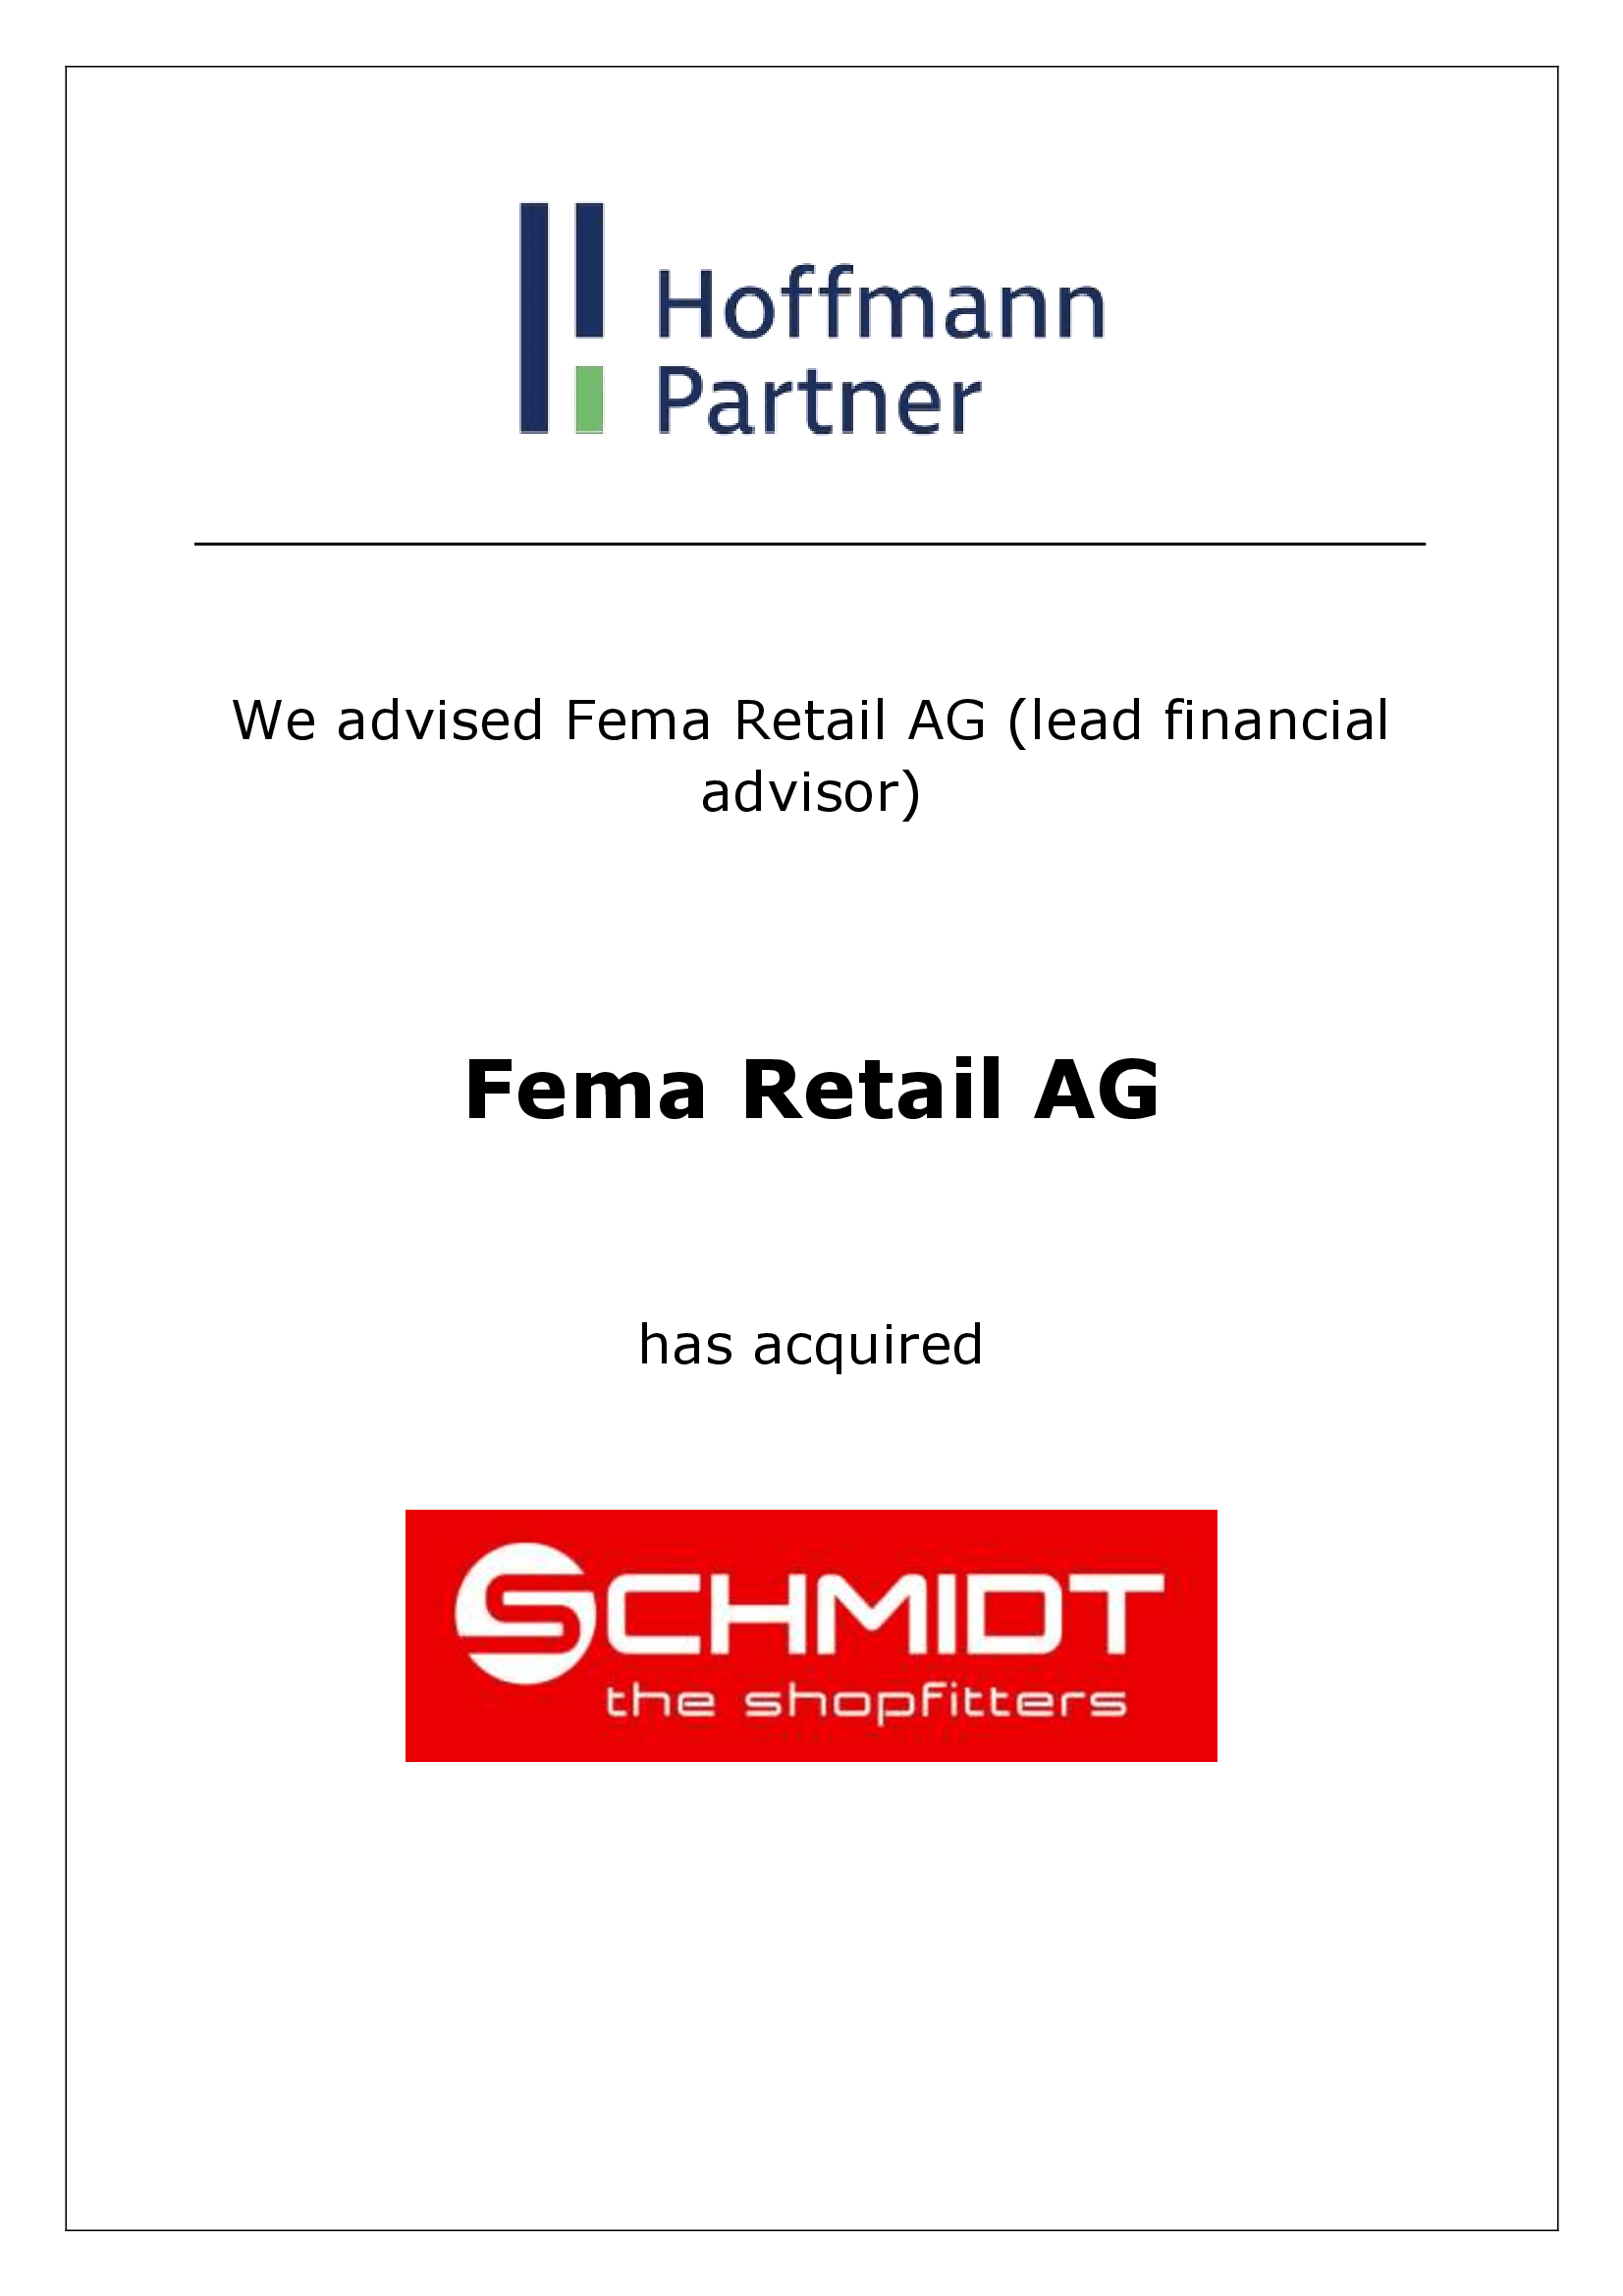 Fema - Schmidt